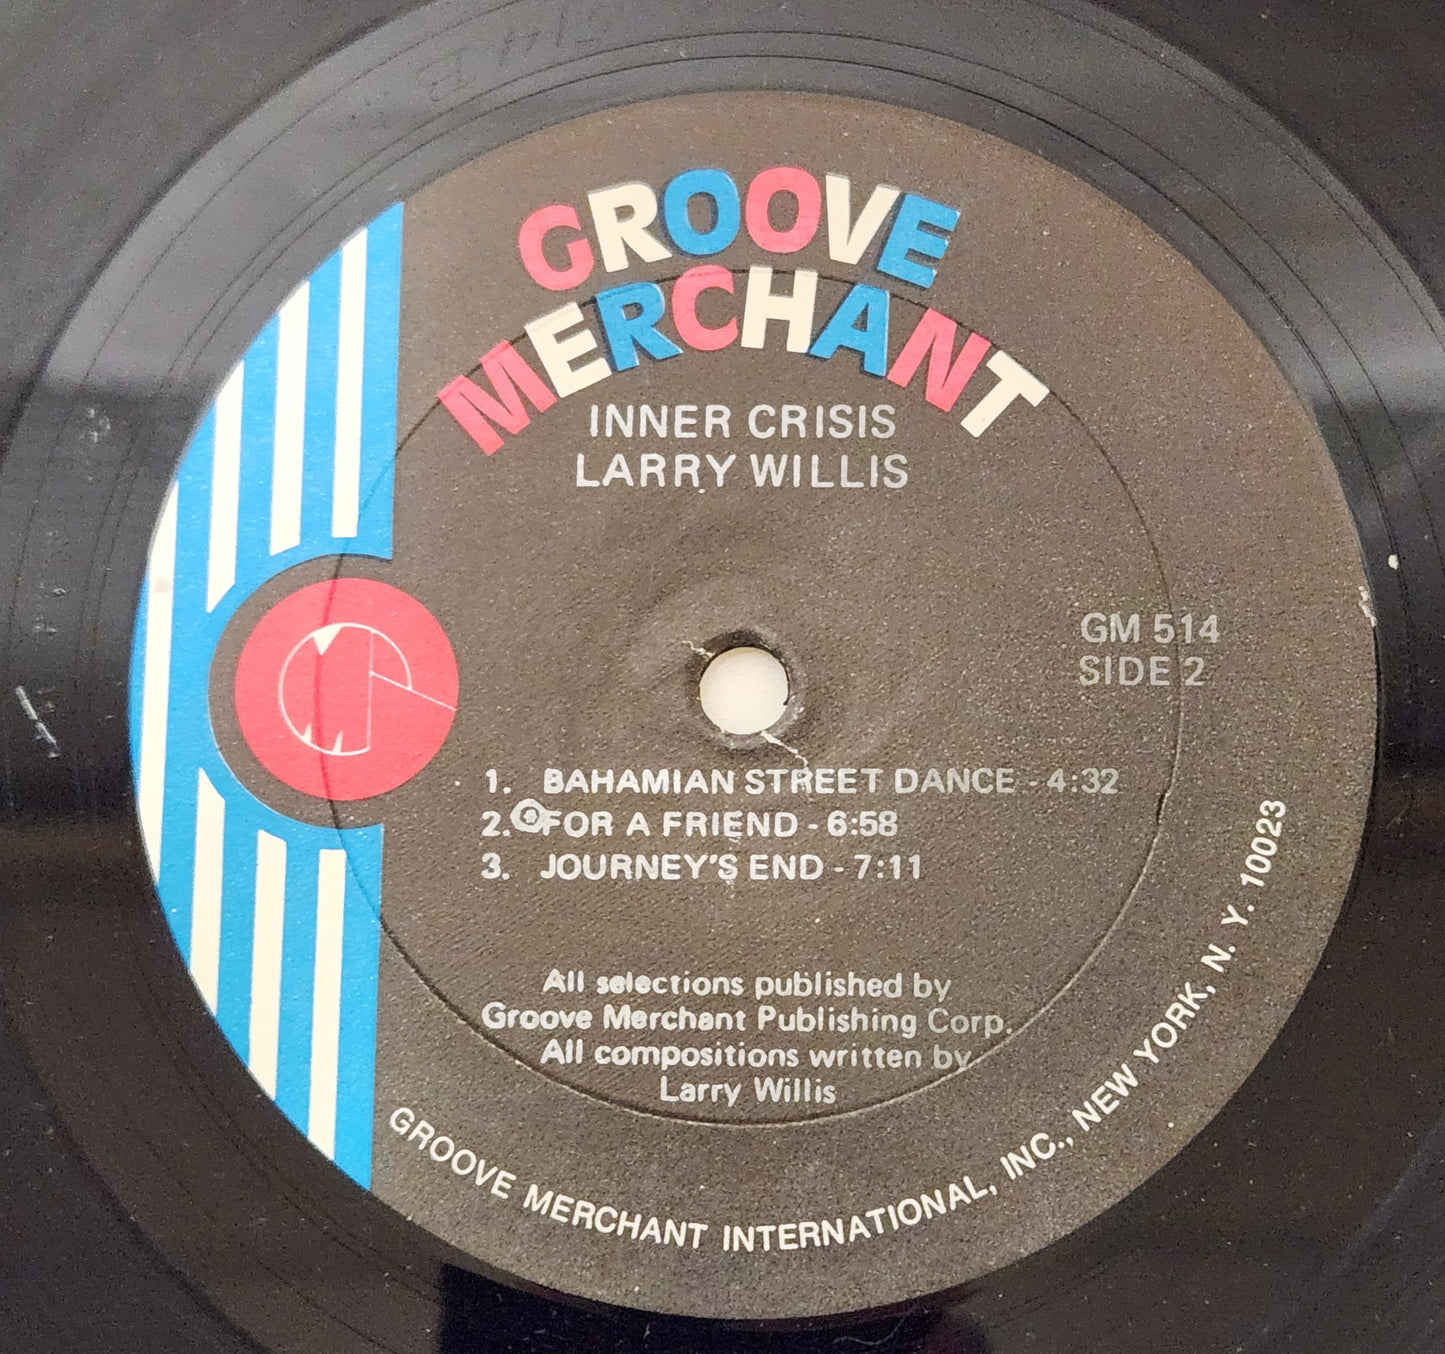 Larry Willis "Inner Crisis" 1974 Jazz Funk Record Album